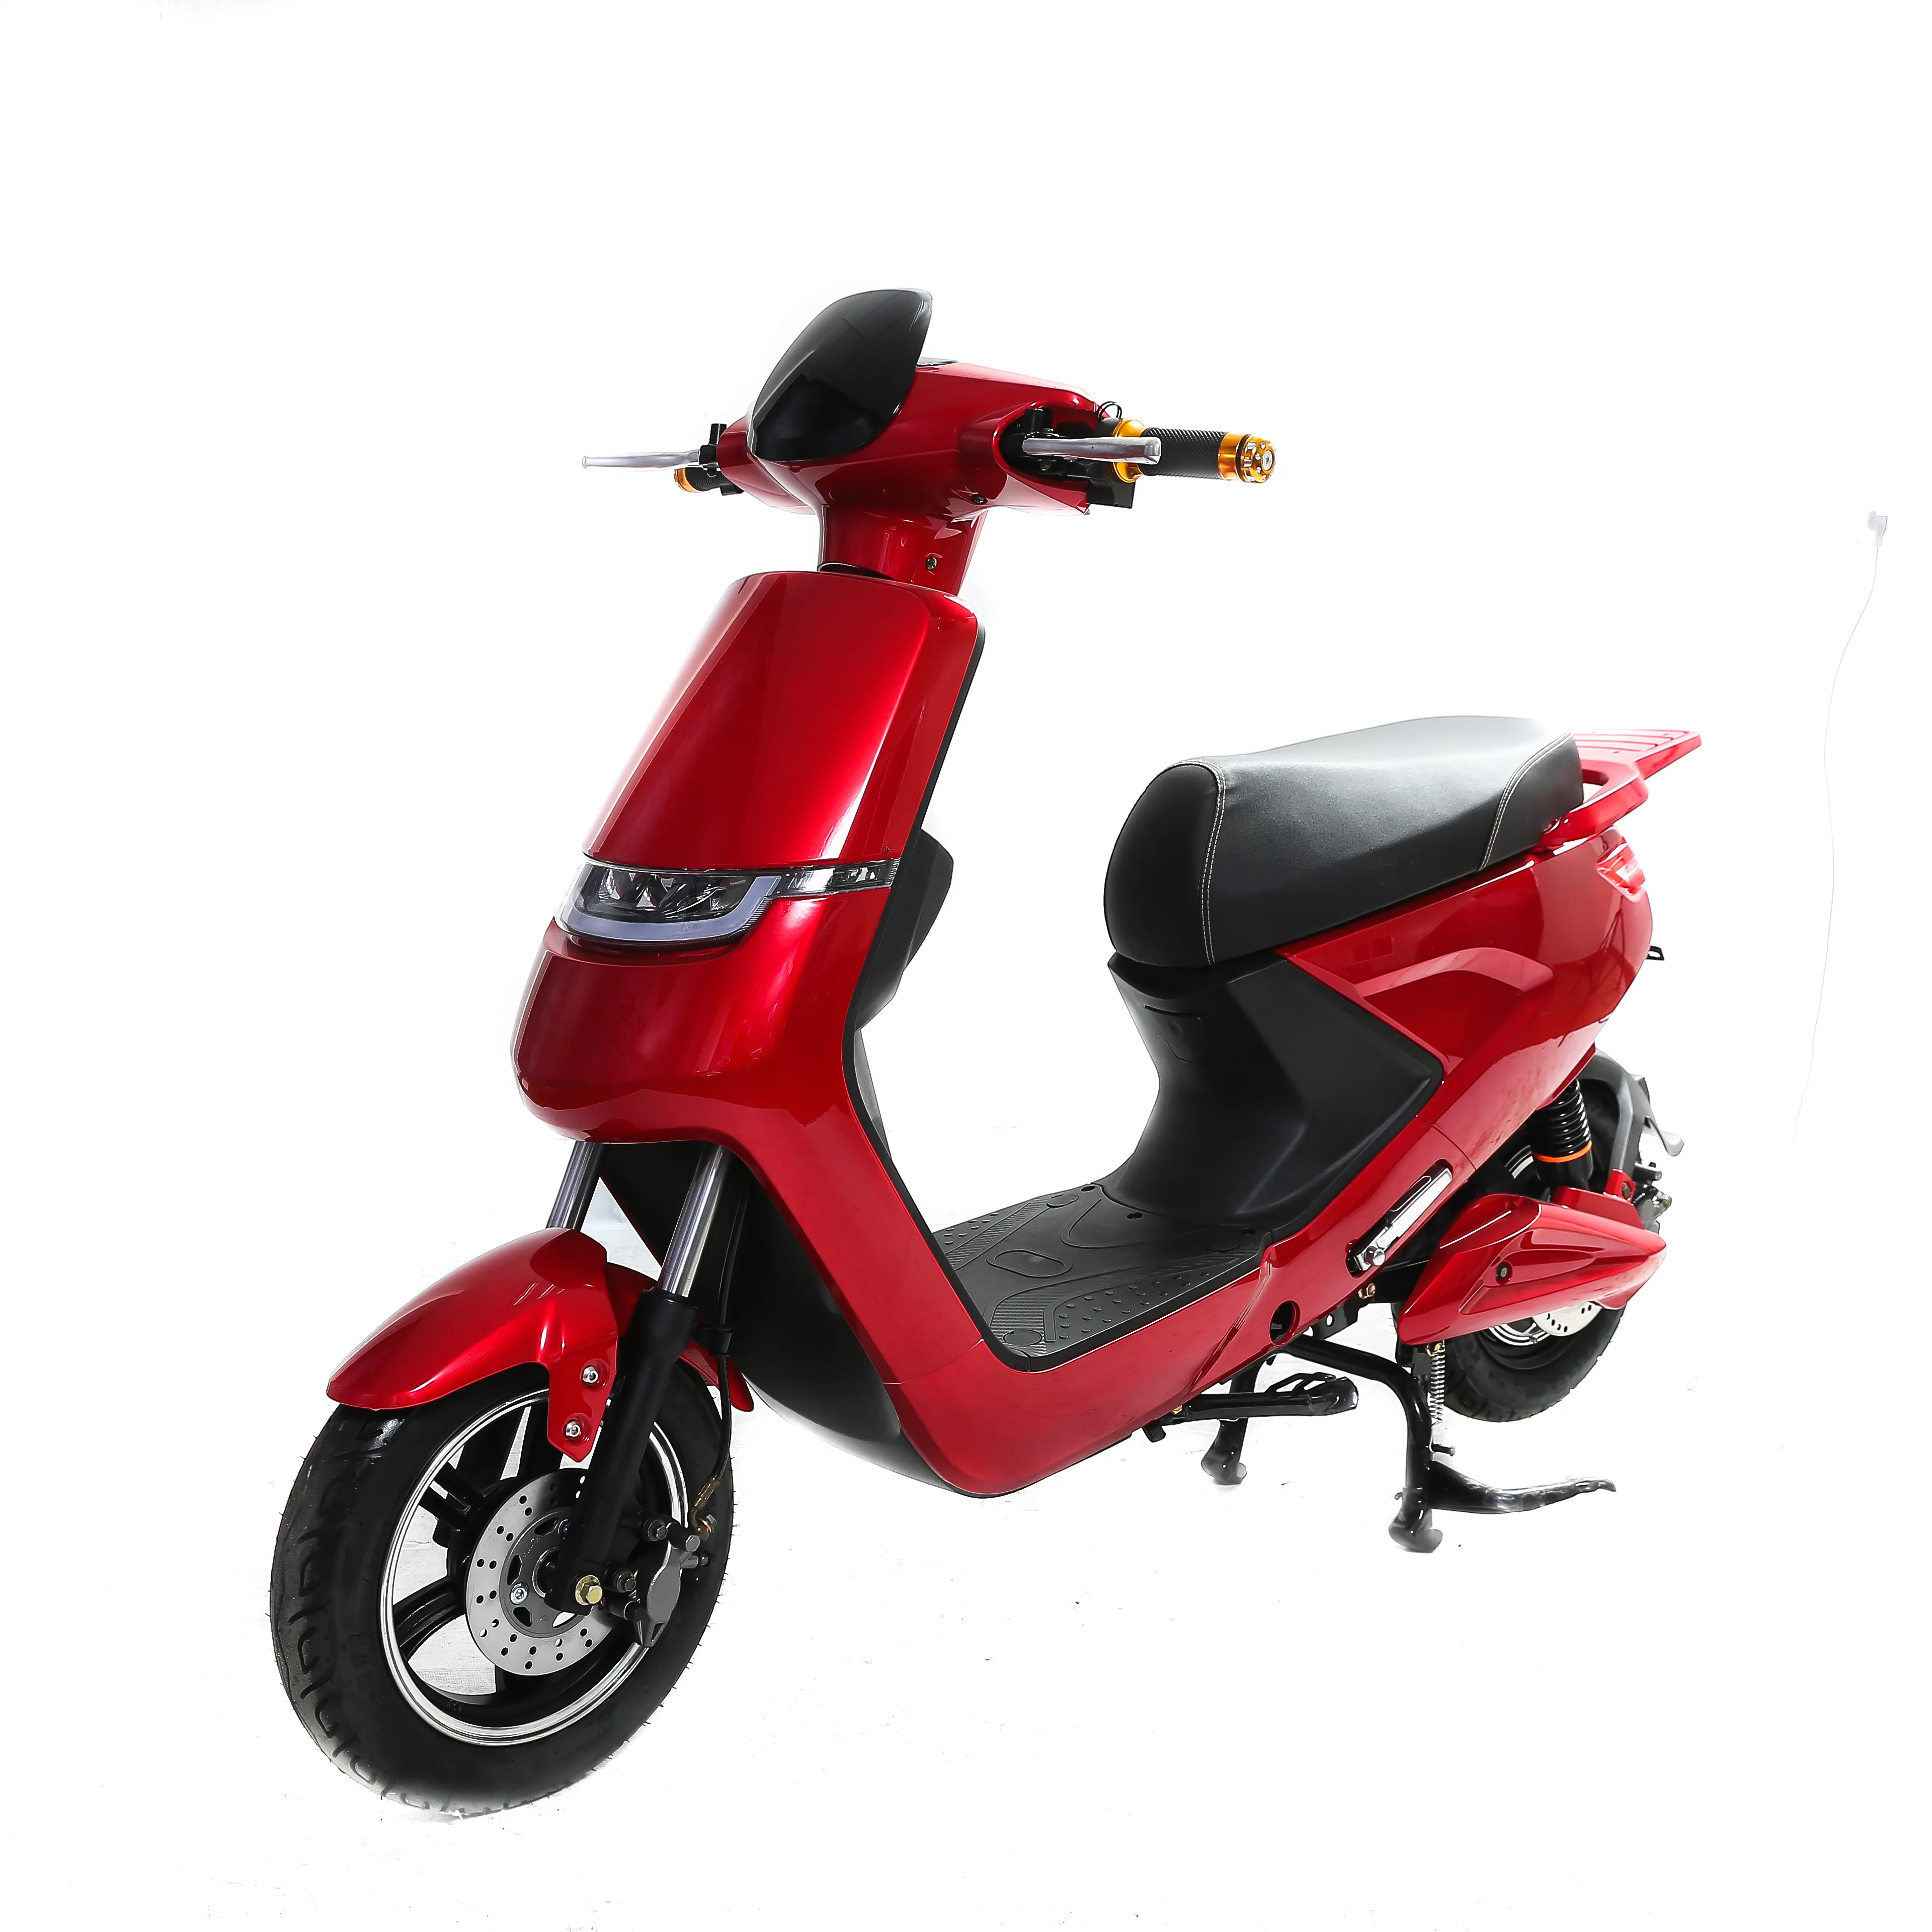 Vendita di qualità garantita prezzo adeguato nuova motocicletta elettrica economica per adulti